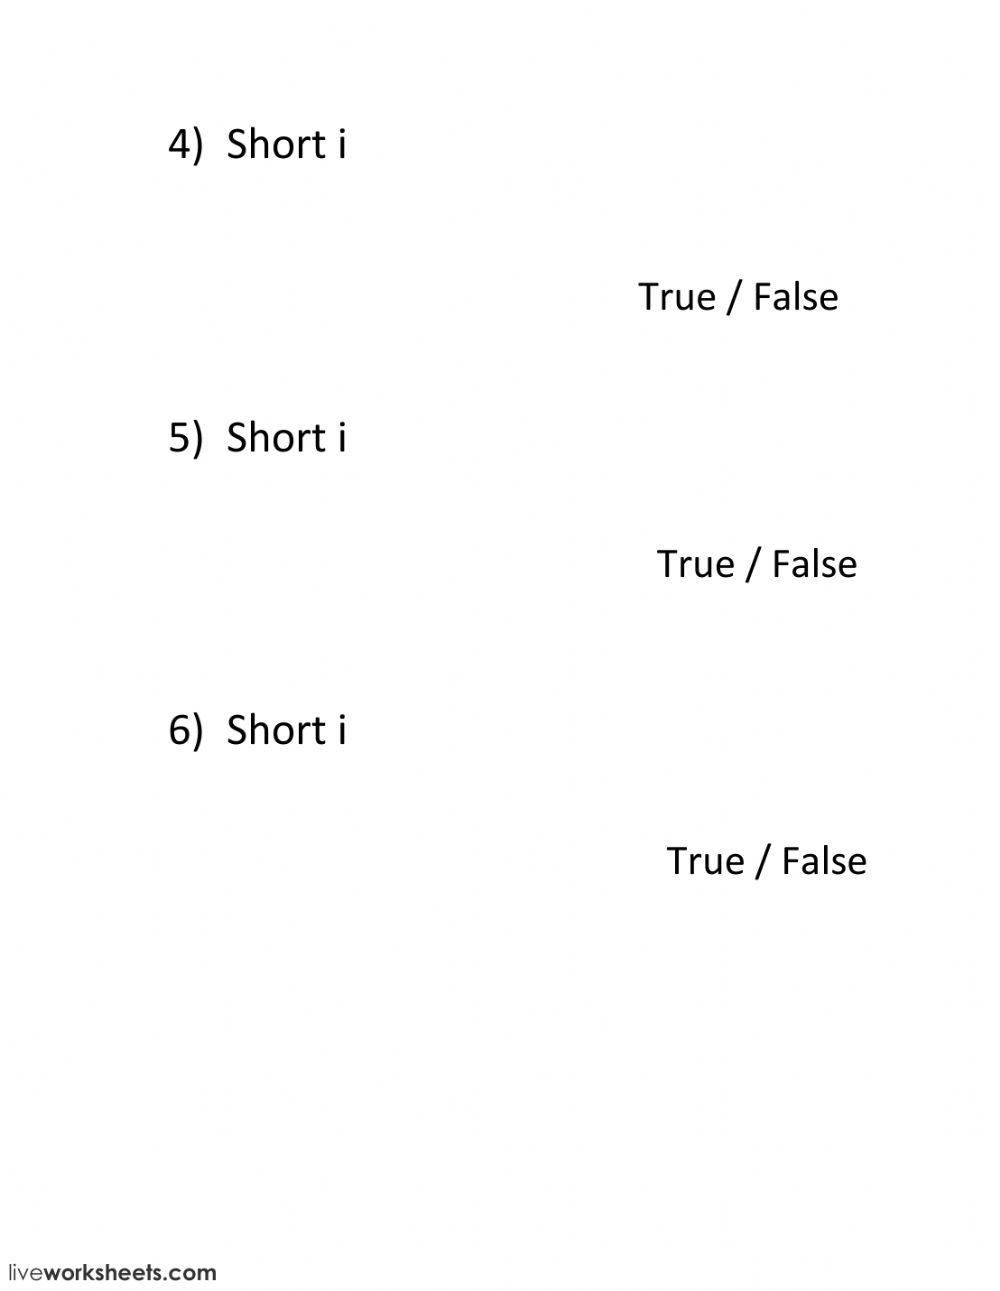 True or false - short i 2